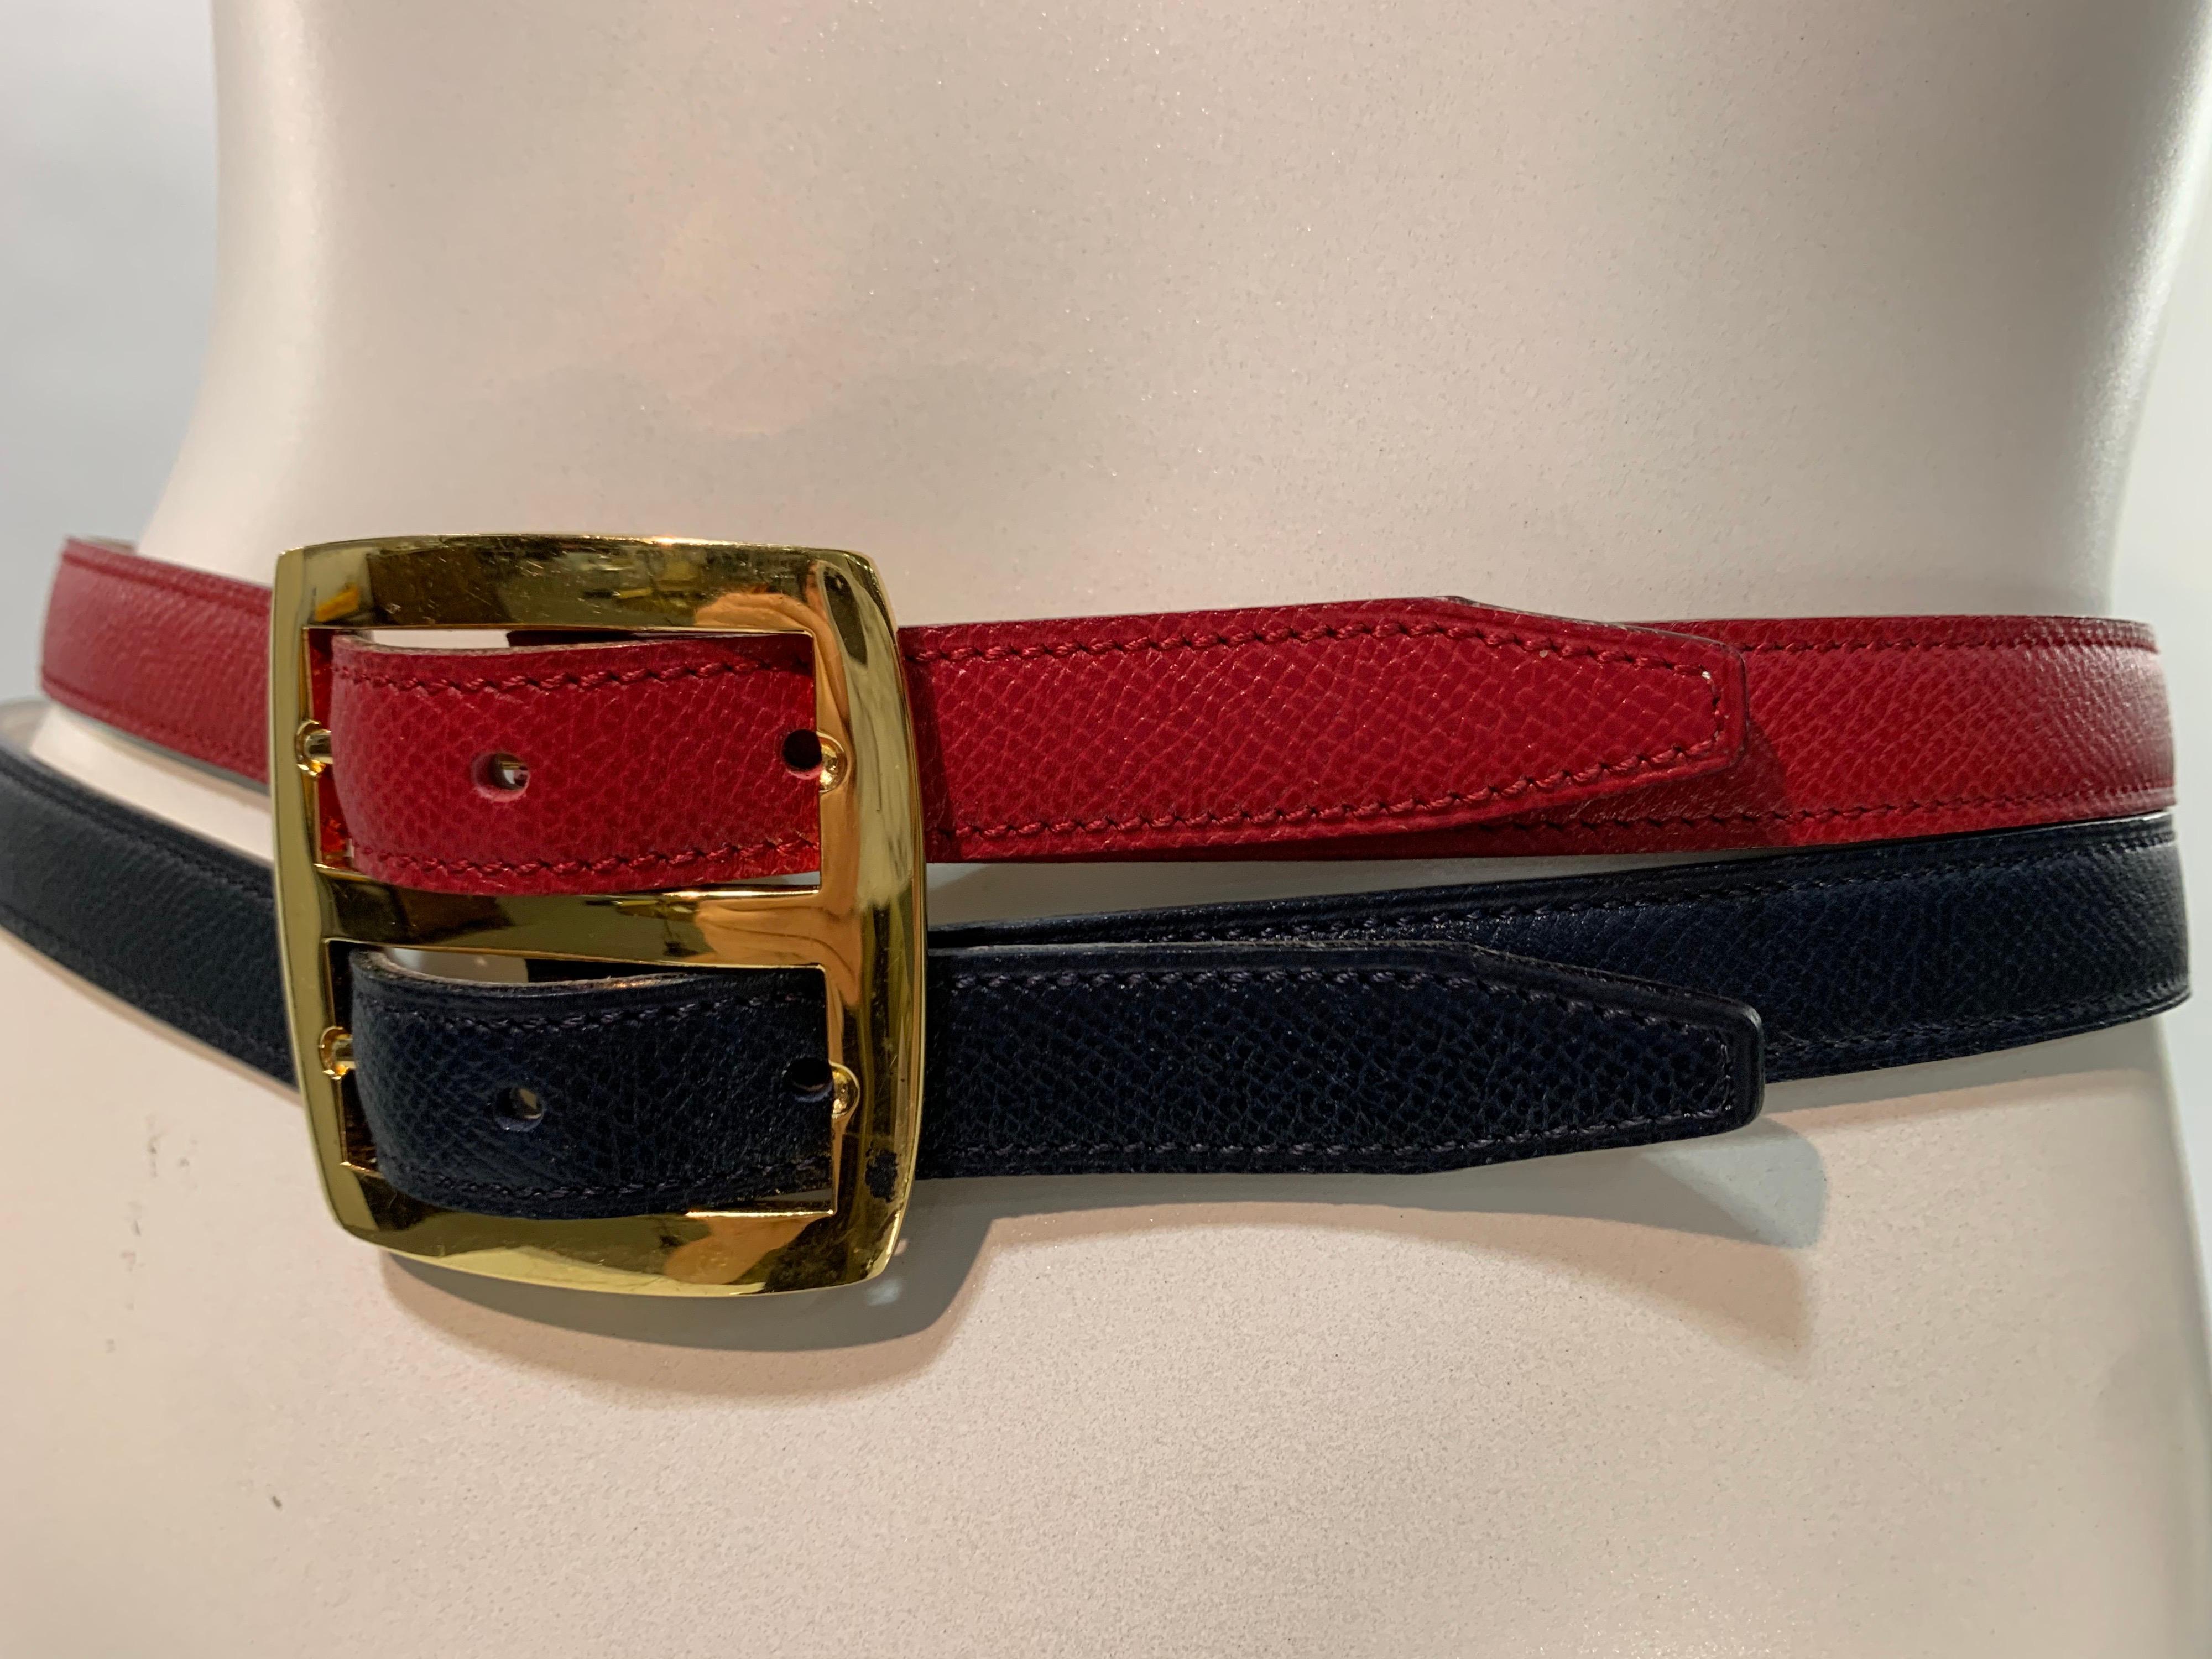 Ceinture double en cuir réversible Hermès des années 1980, fabuleusement utile et polyvalente : un côté est en finition lézard estampillé dans les couleurs rouge et bleu marine emblématiques d'Hermès, l'autre est en marron et blanc. Double boucle